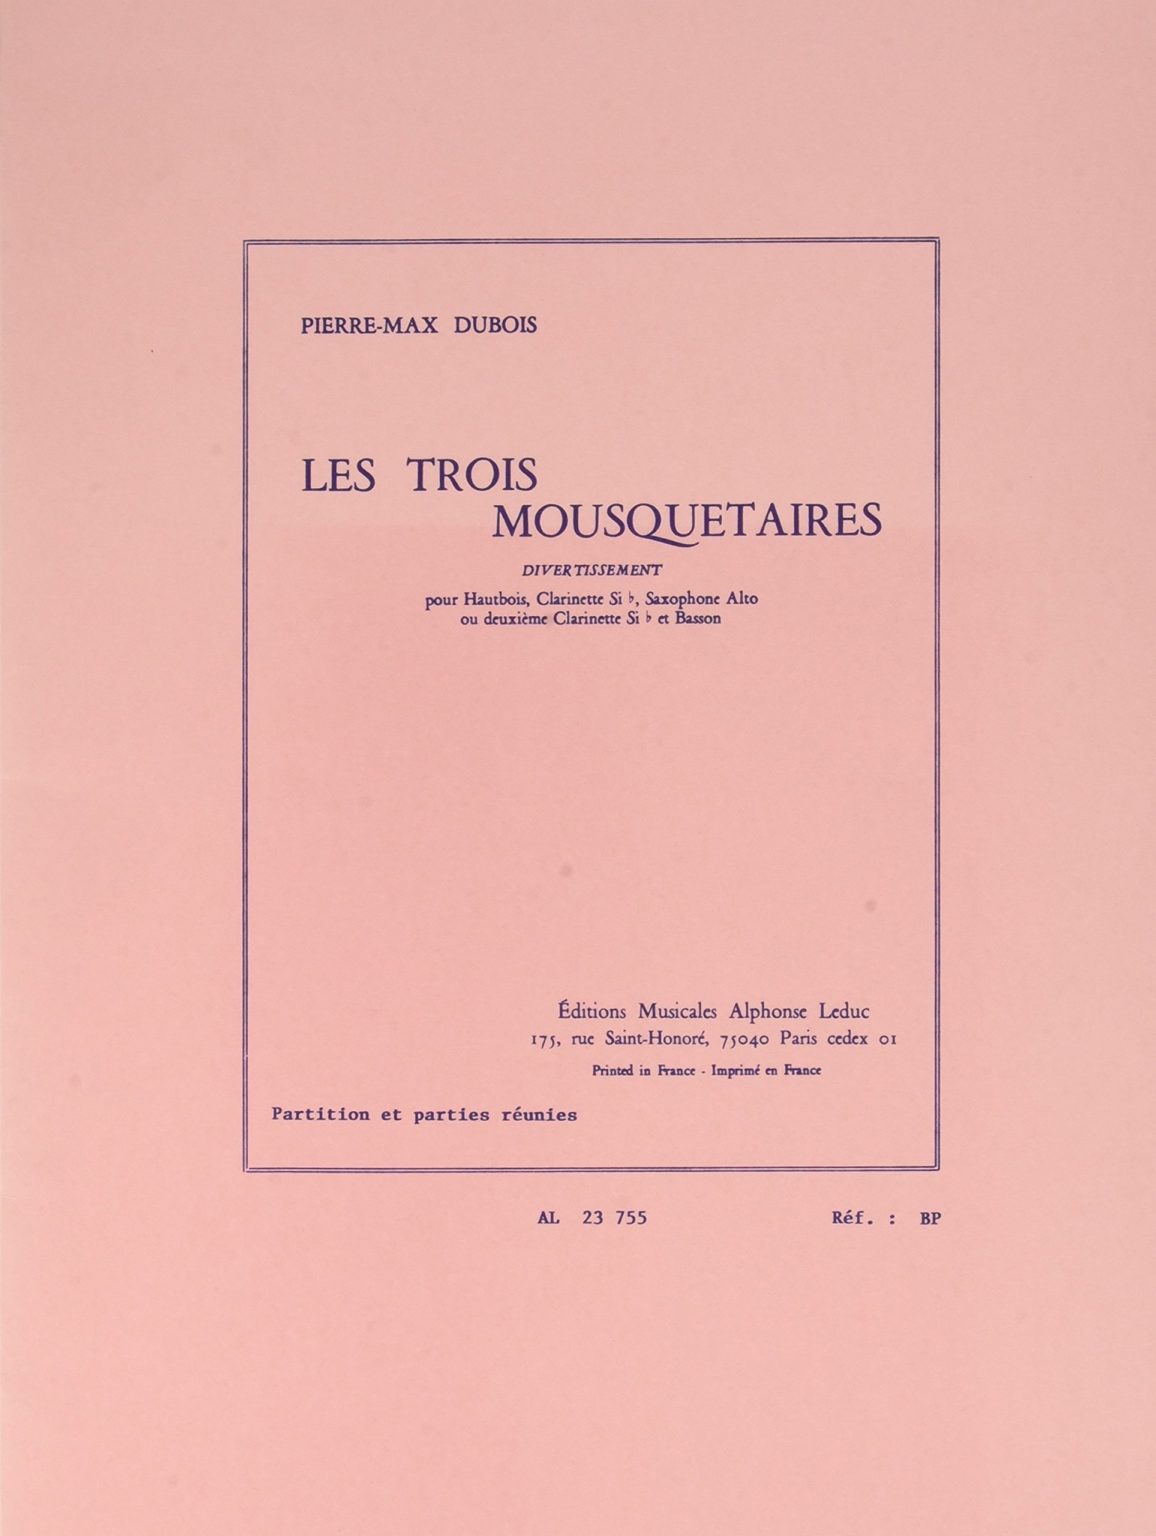 Les Trois Mousquetaires. Pierre Max Dubois